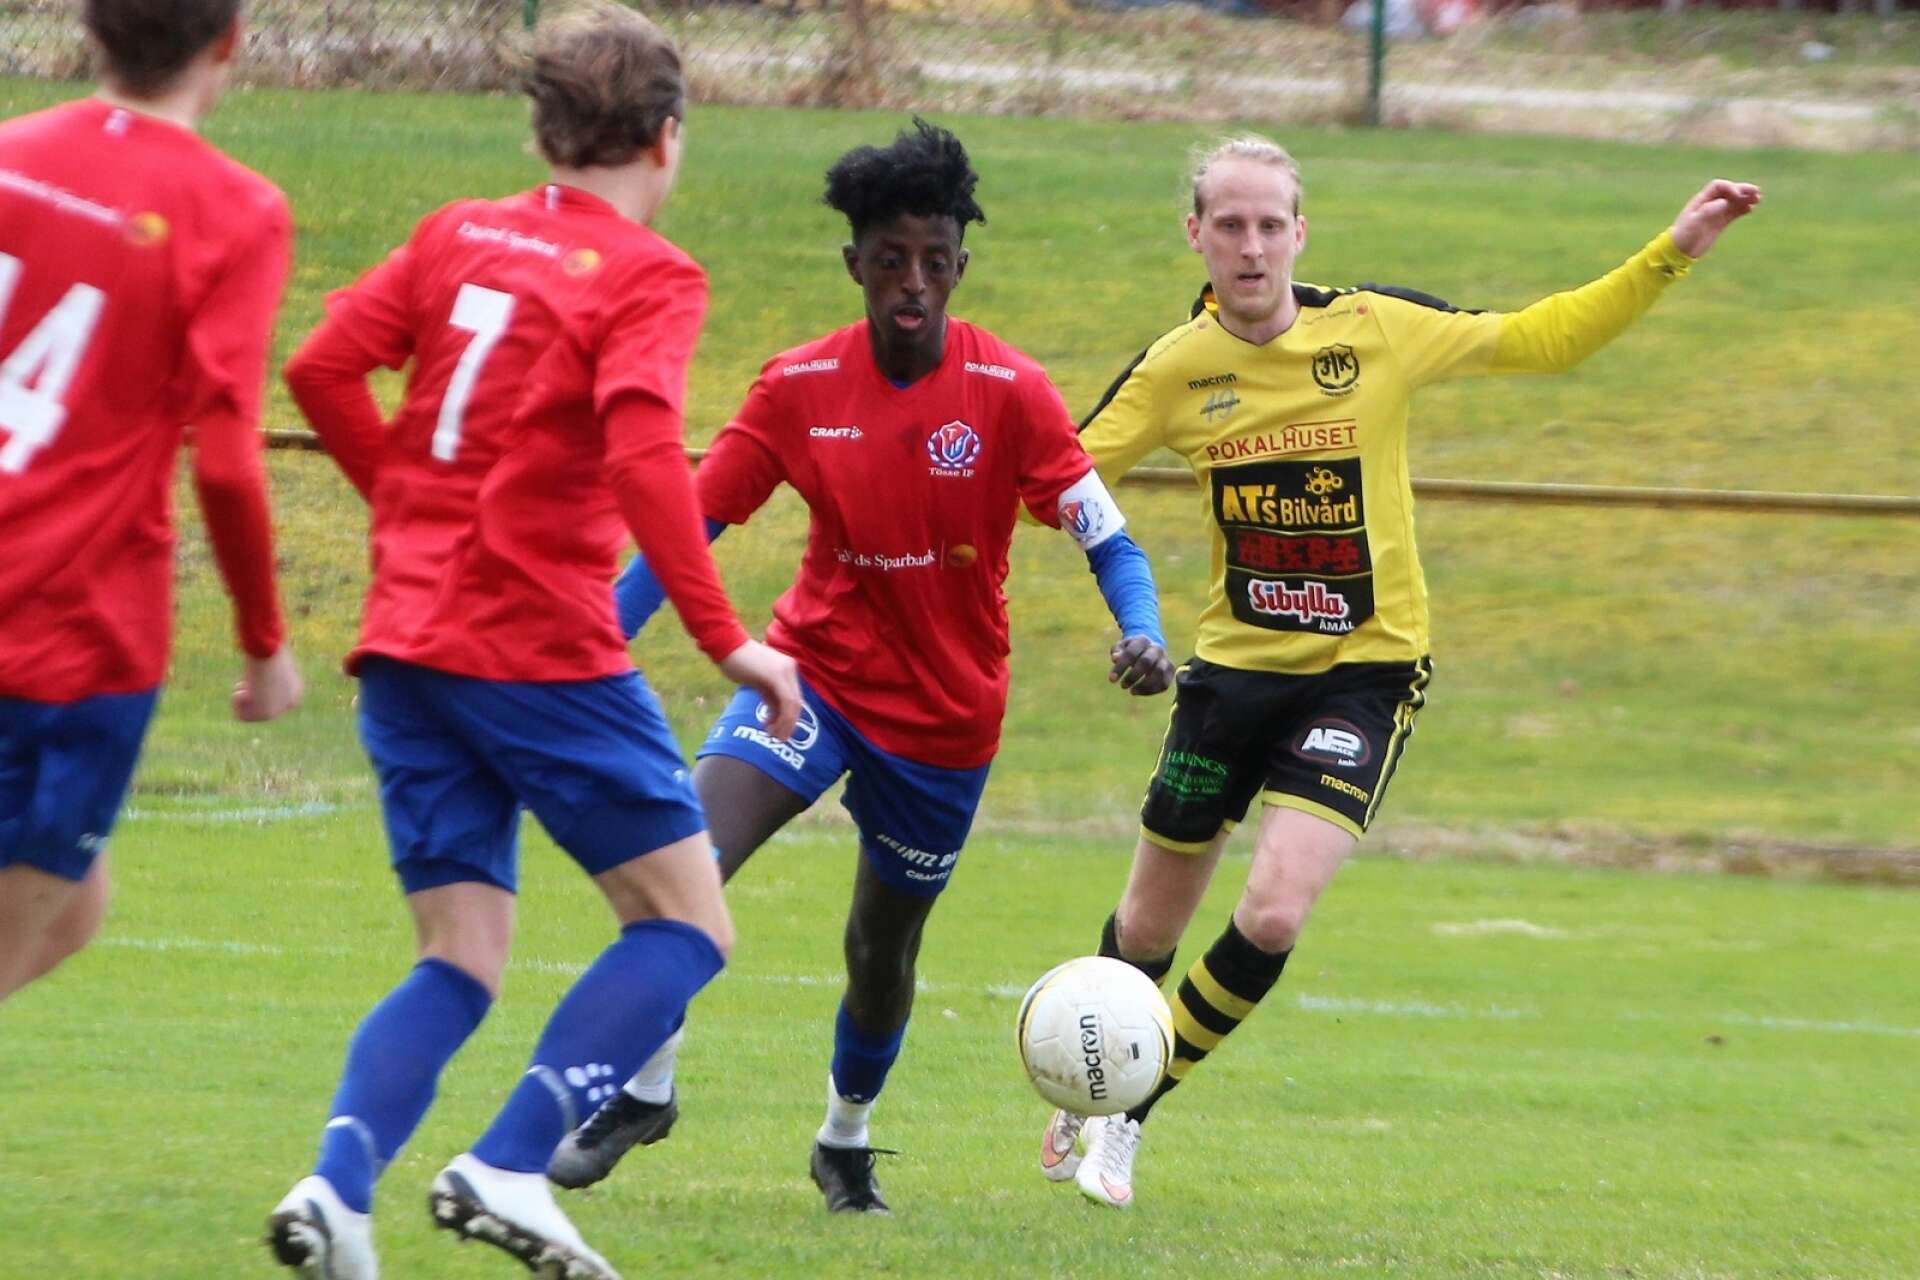 Tössekaptenen och vänsterbacken Abdiasis Elmi Muhumed plockar bollen framför FIK-yttern Mathias Andersson.